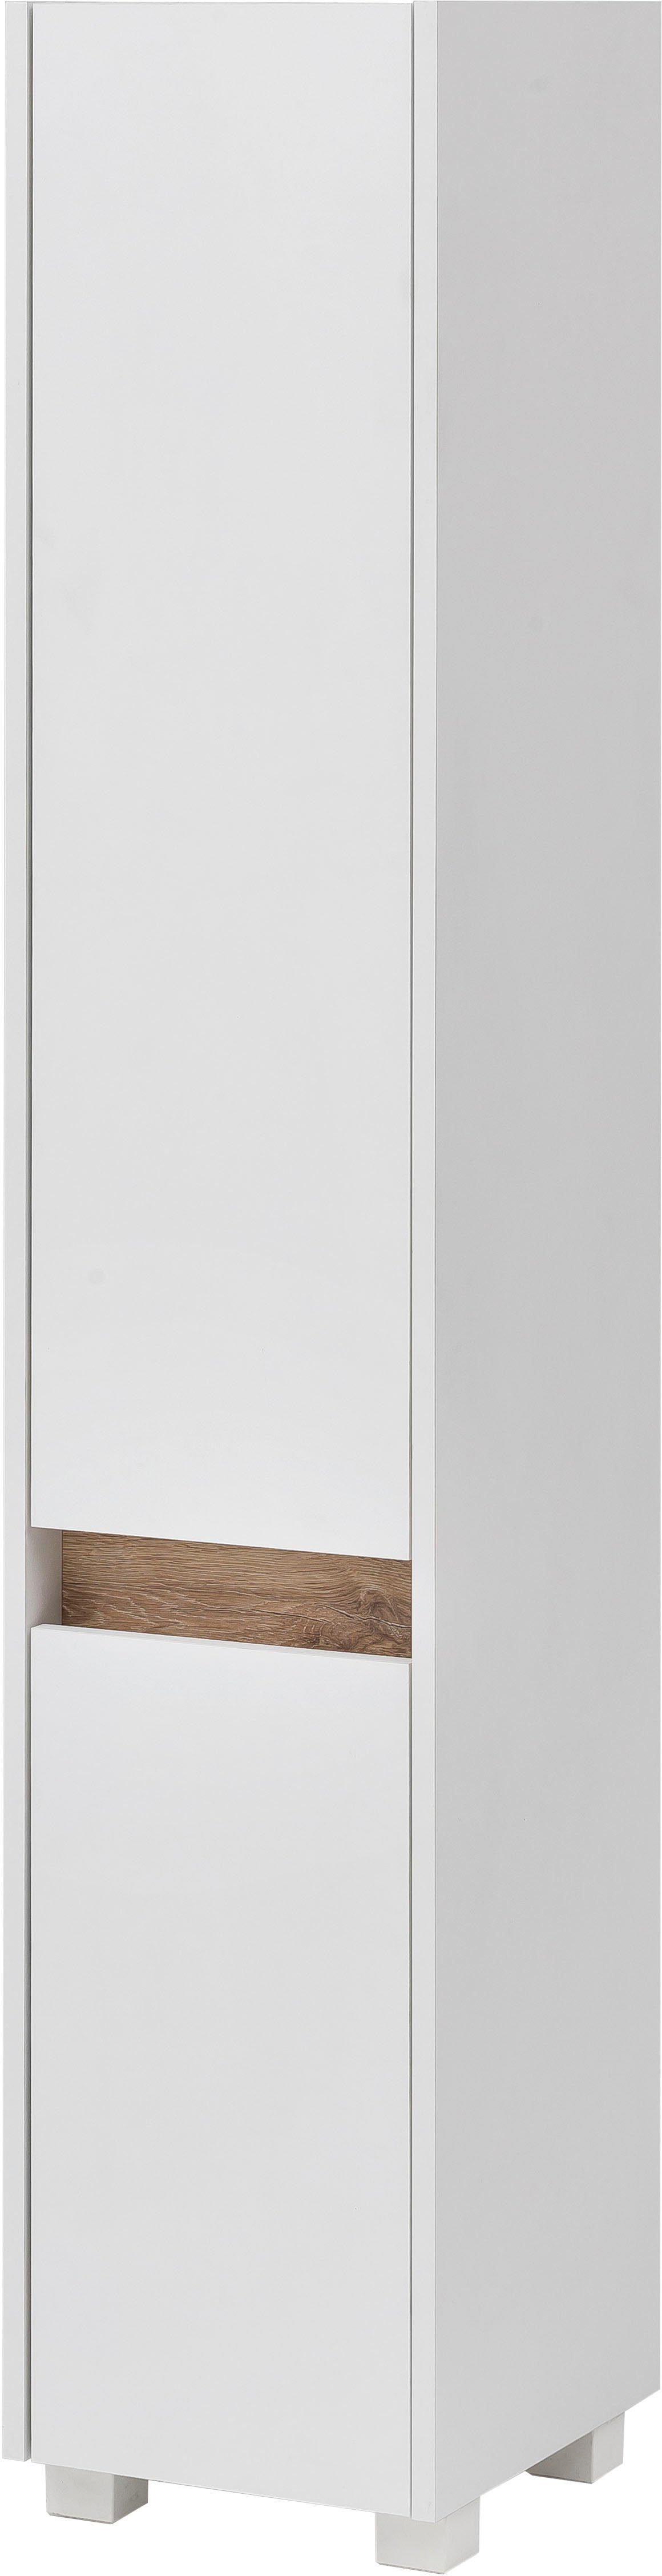 Schildmeyer Hochschrank Cosmo Höhe 164,5 cm, Badezimmerschrank, Blende im modernen Wildeiche-Look weiß | weiß | Hochschränke